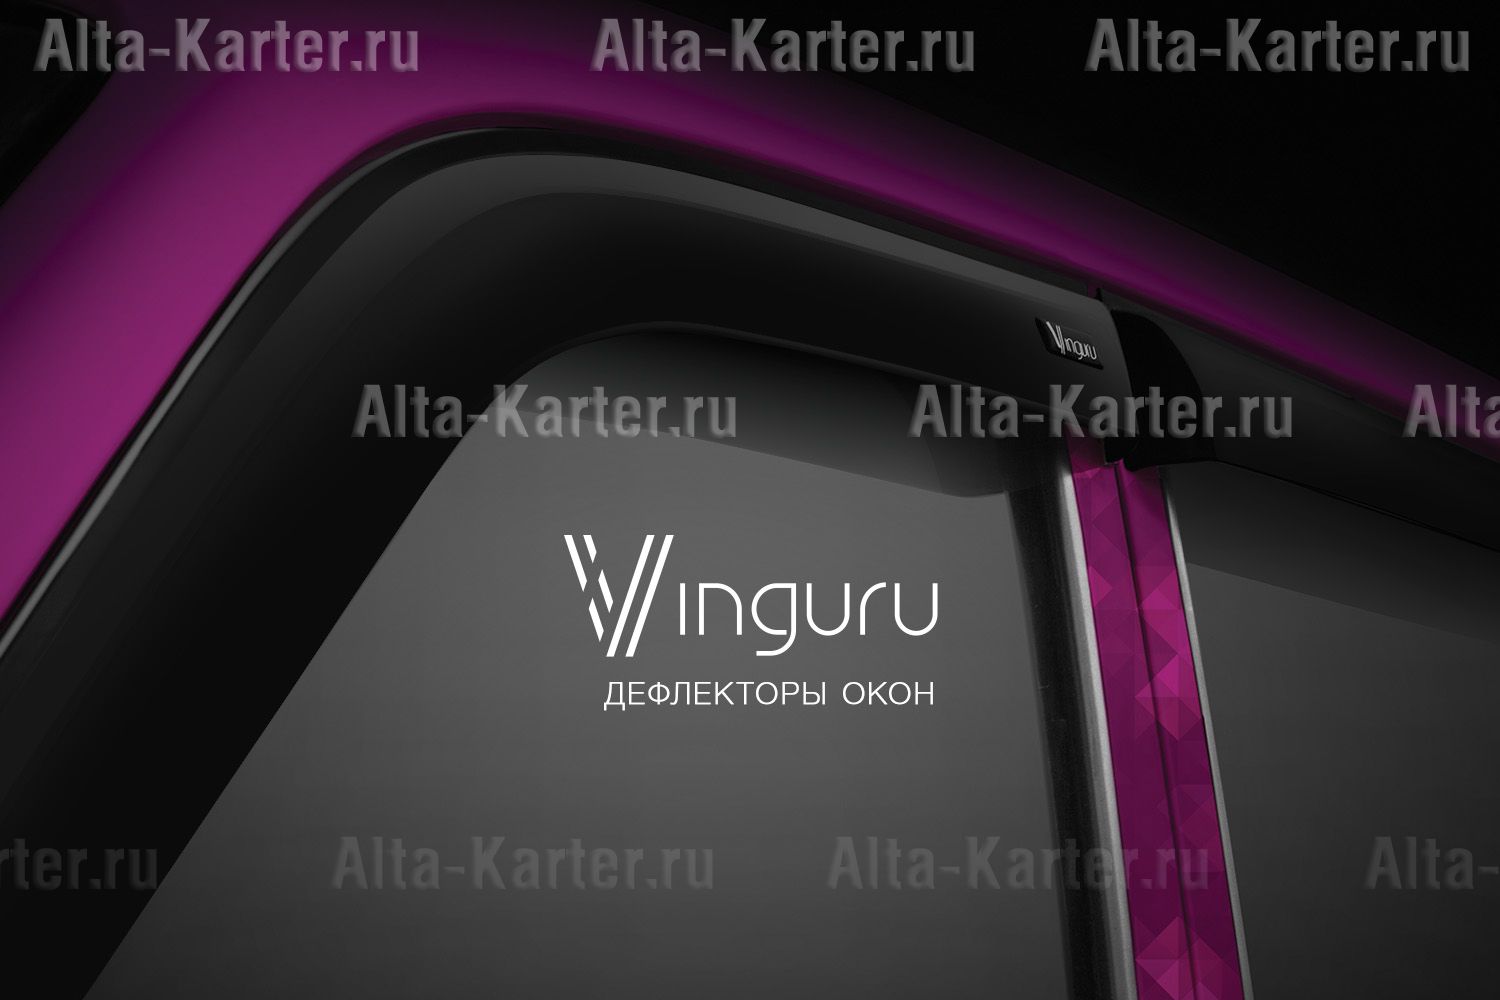 Дефлекторы Vinguru для окон Renault Logan I 2005-2013. Артикул AFV23405